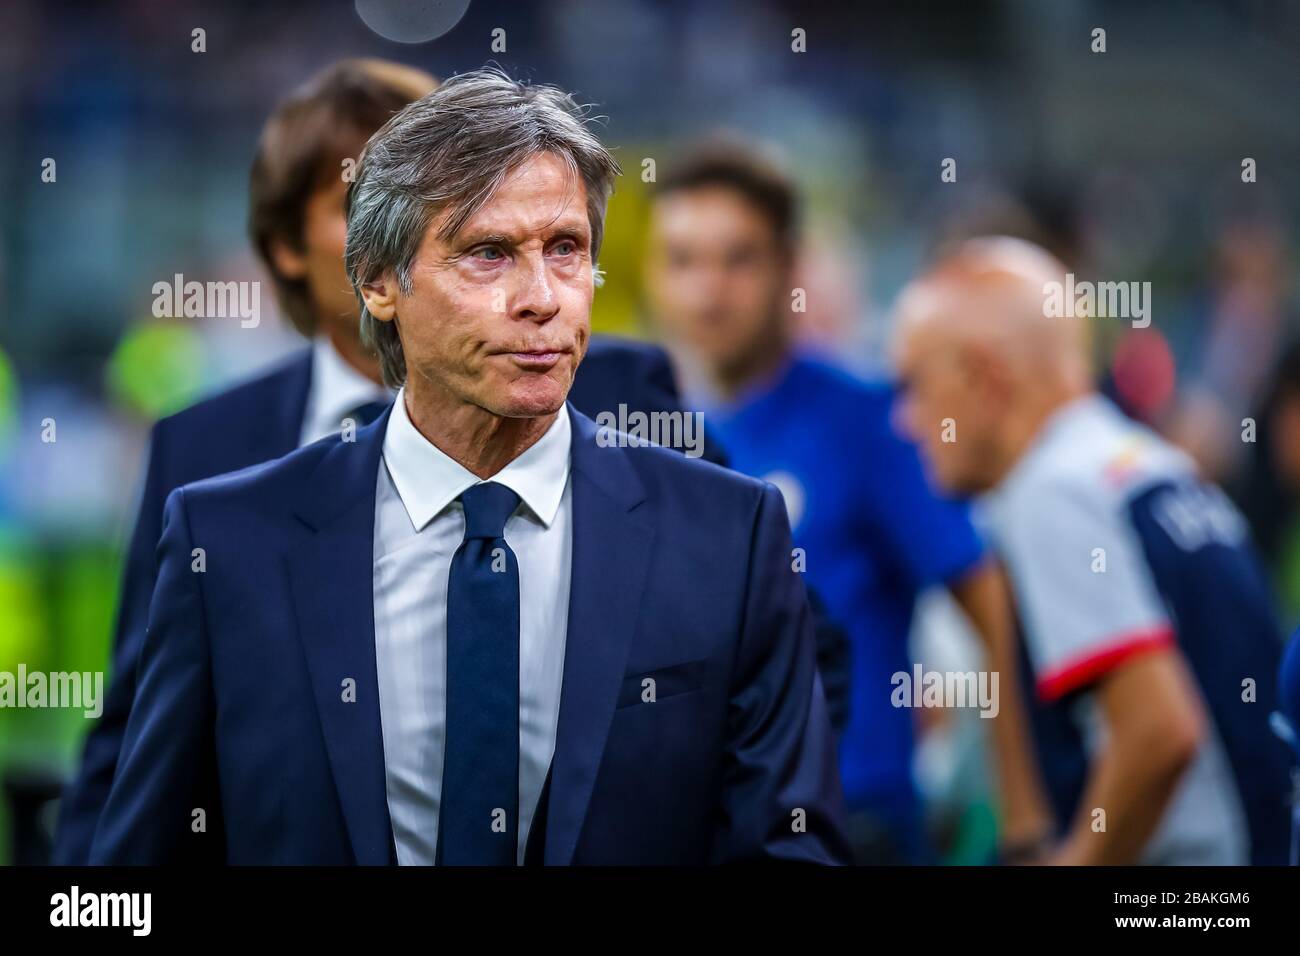 Gabriele Oriali durante la temporada de fútbol 2019/20 imágenes simbólicas - crédito de la foto Fabrizio Carabelli /LM/ Foto de stock